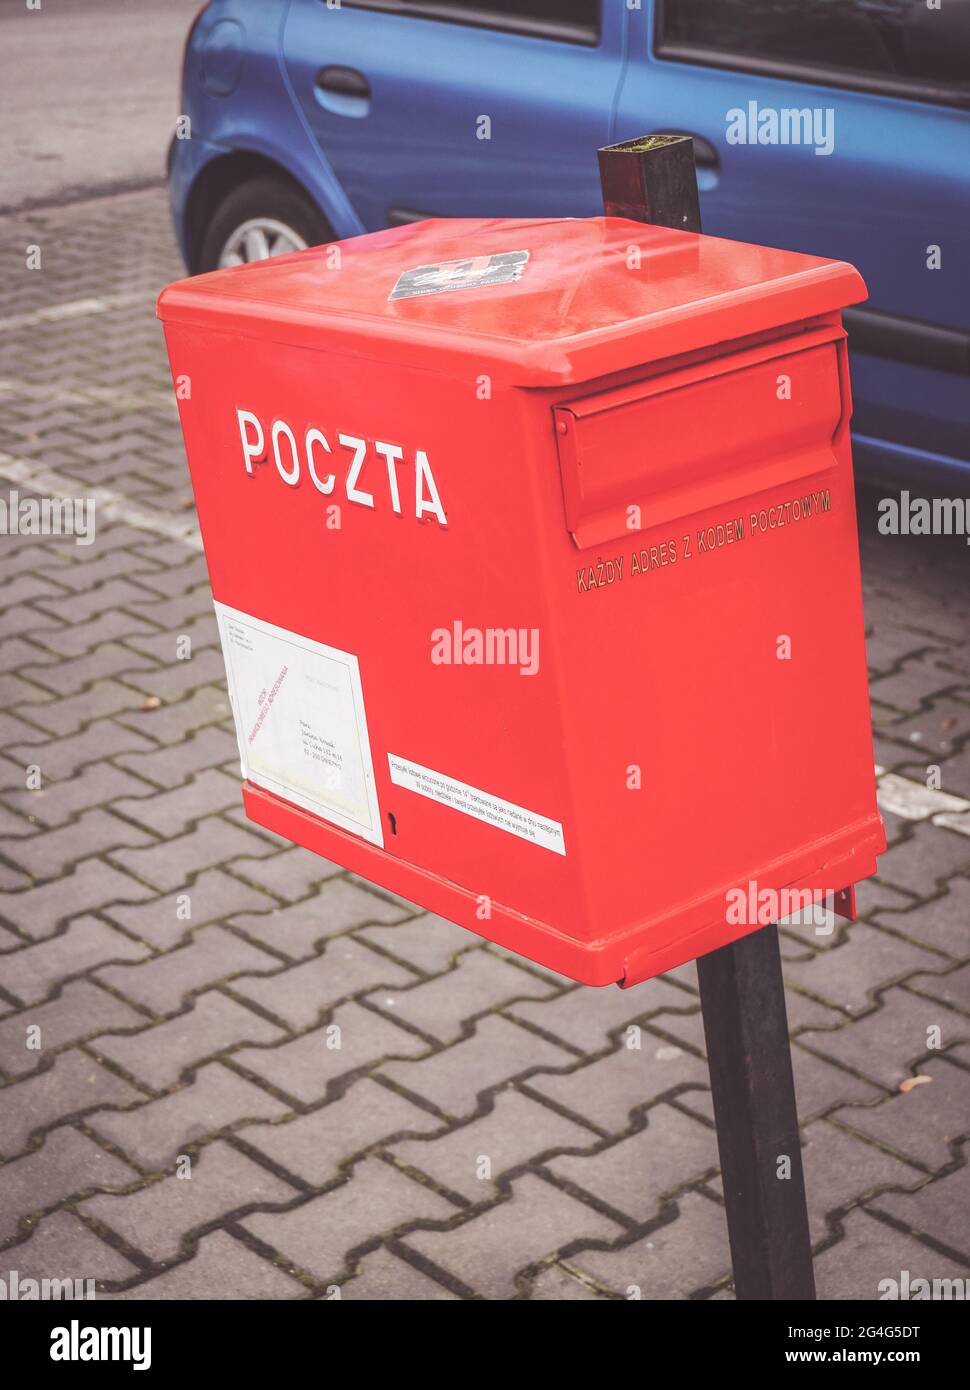 POZNAN, POLAND - Oct 17, 2016: Red Poczta Polska mail box in the city Stock  Photo - Alamy